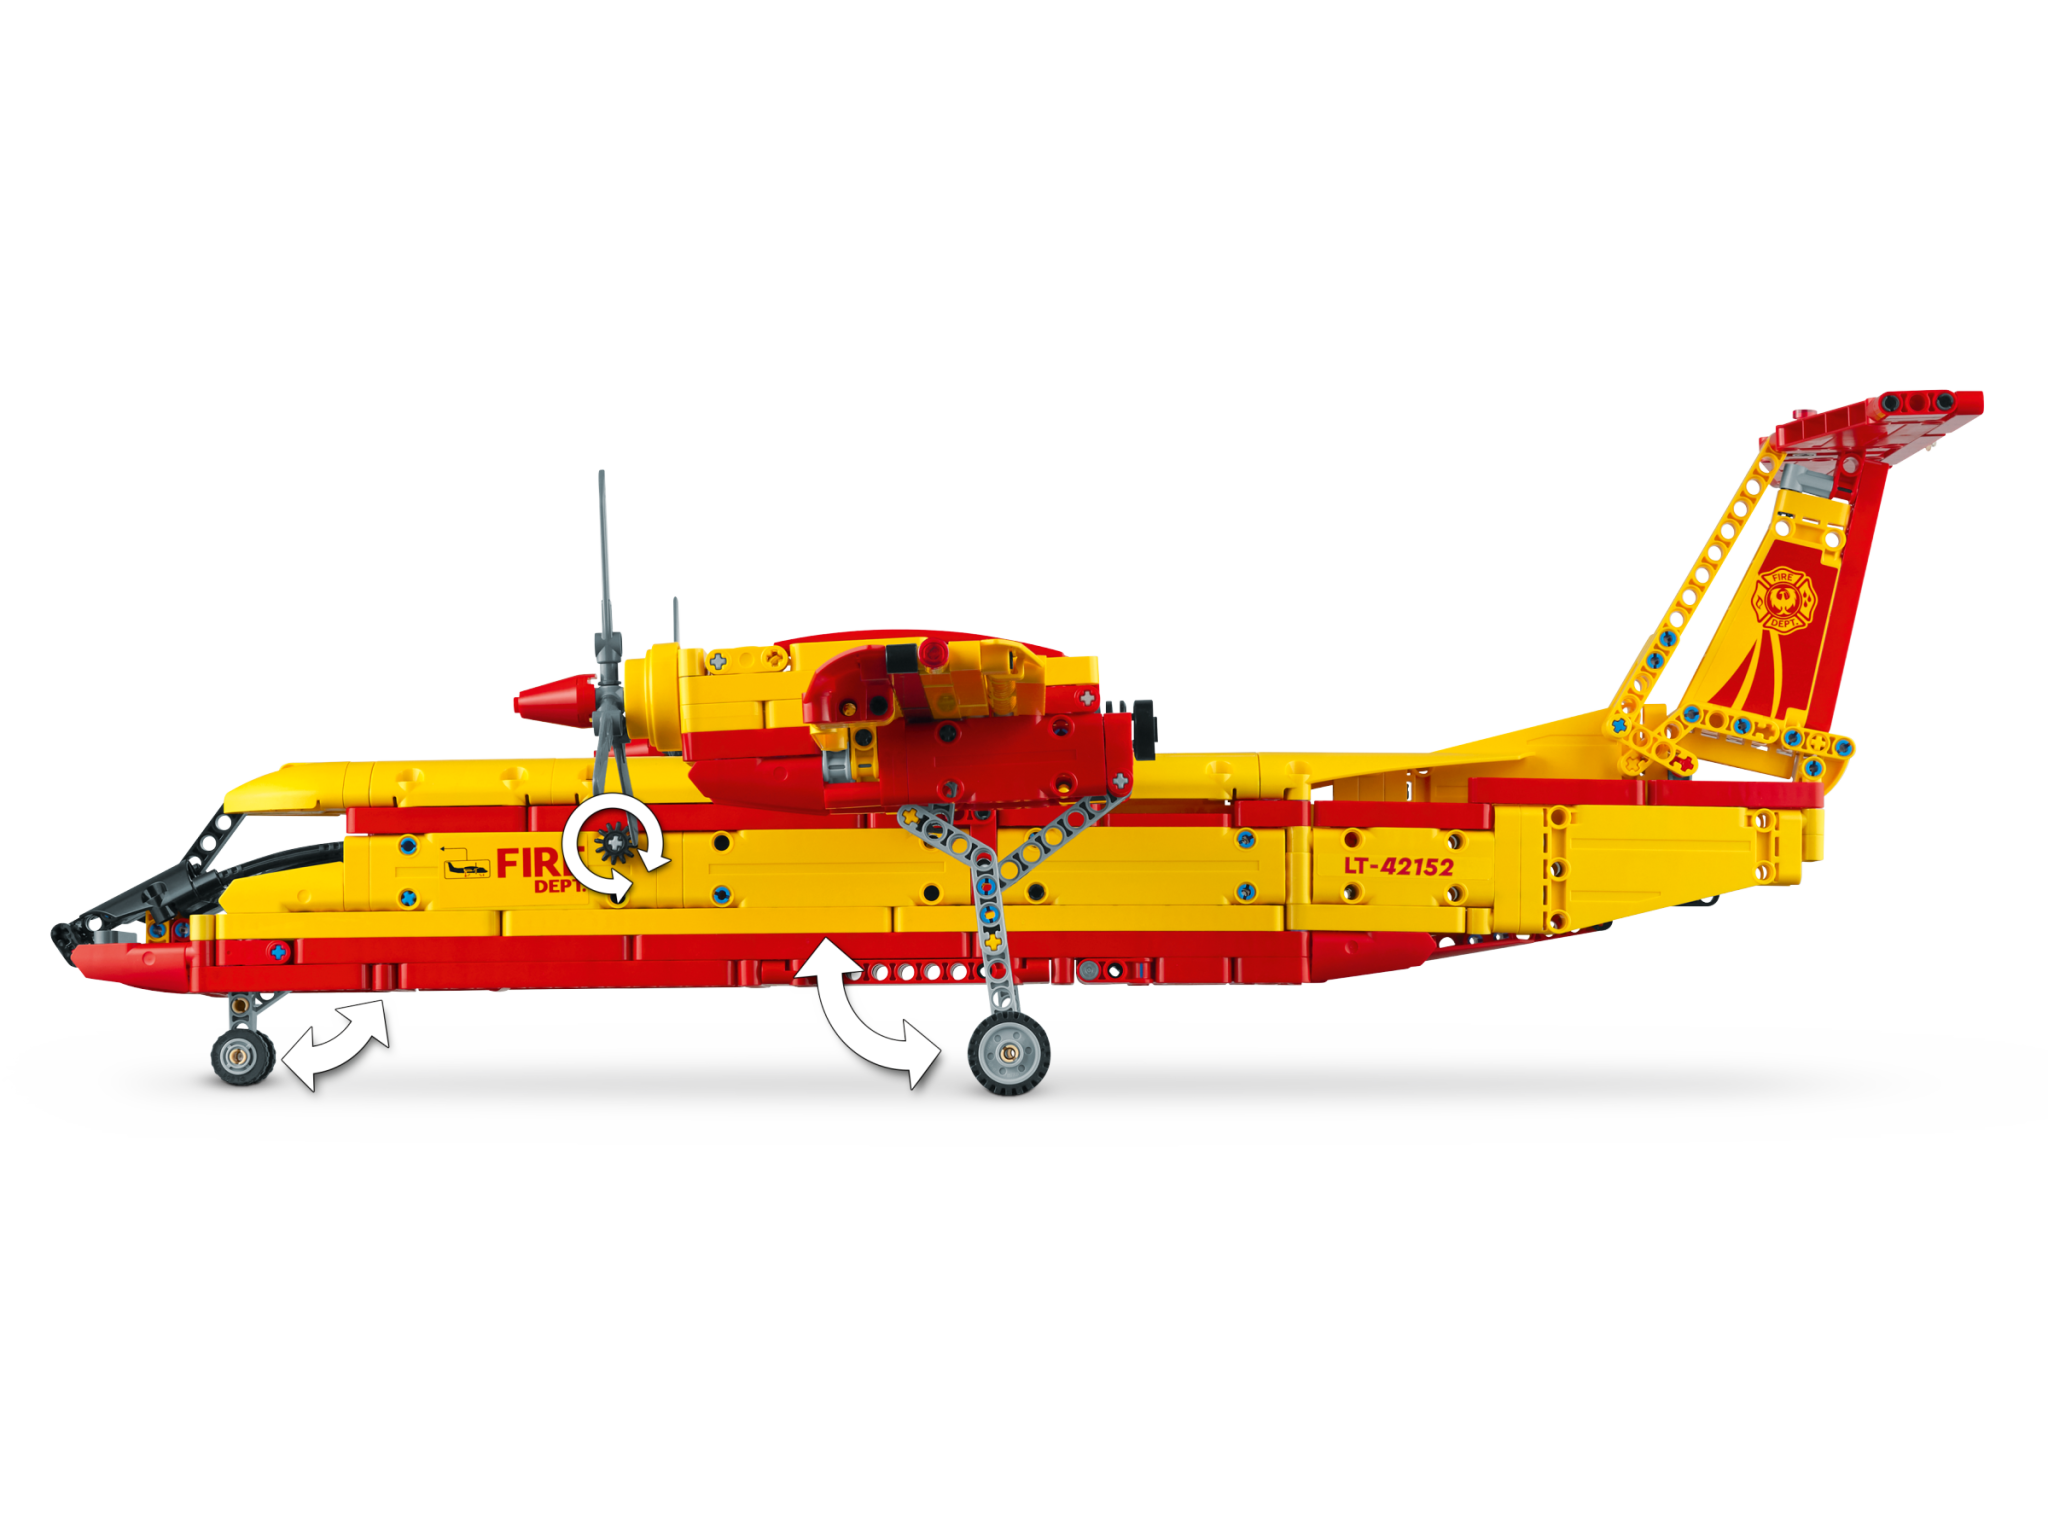 Lego®technic 42145 - l'helicoptere de secours airbus h175, jeux de  constructions & maquettes